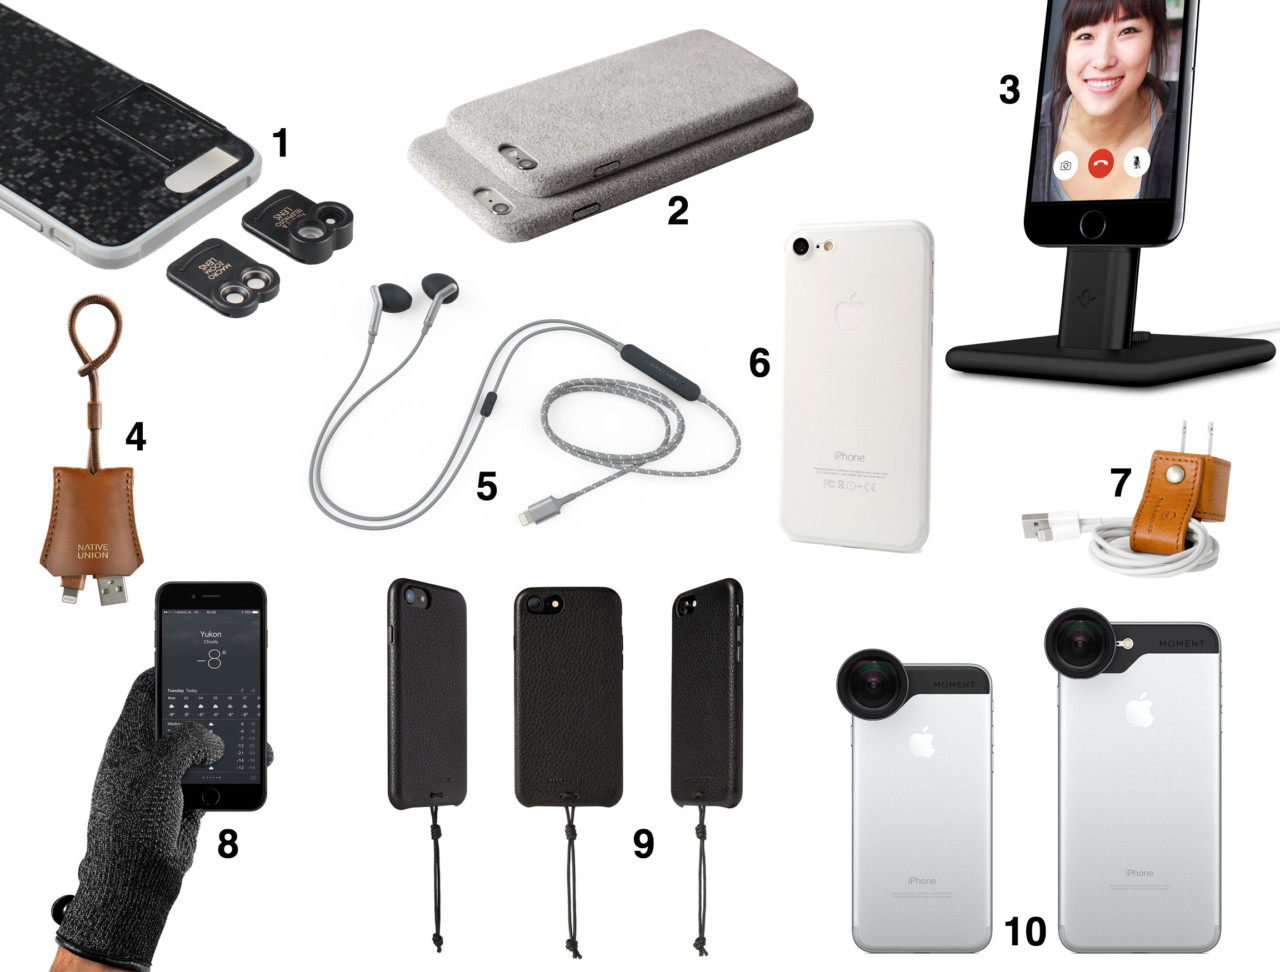 Selv tak Kapel Egetræ 10 Essential Accessories for the Apple iPhone 7